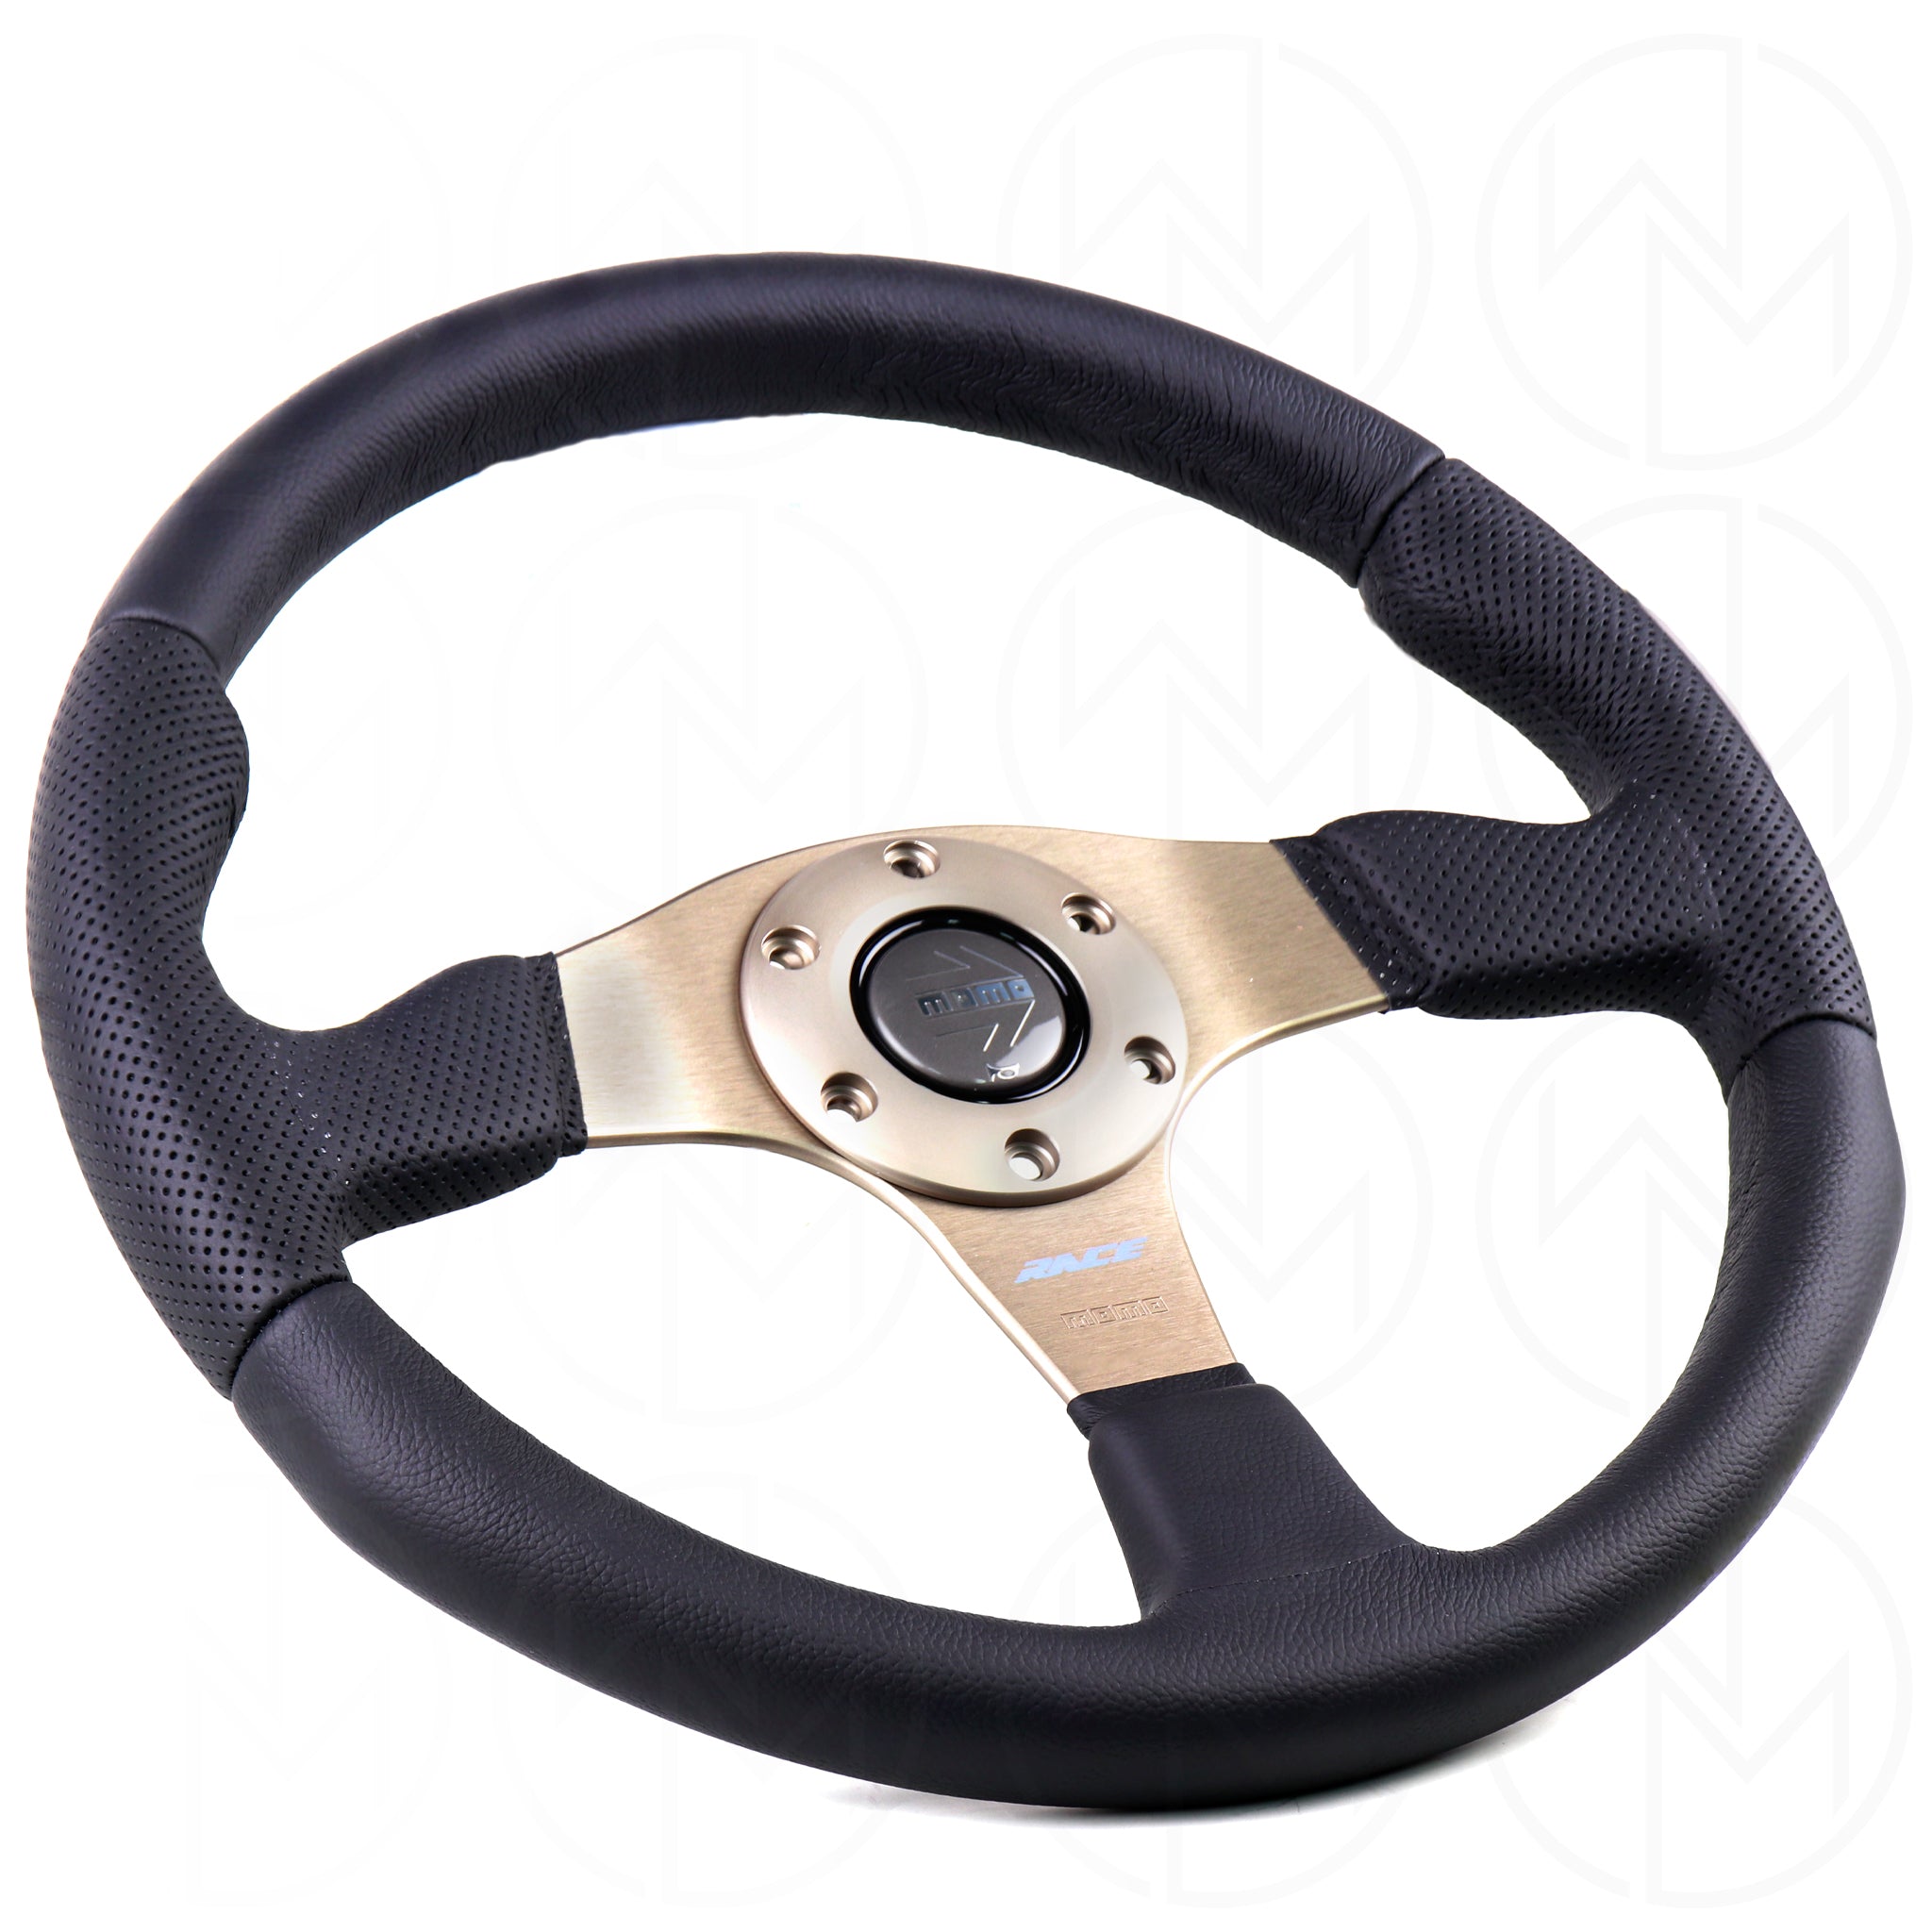 Momo Race evc steering-